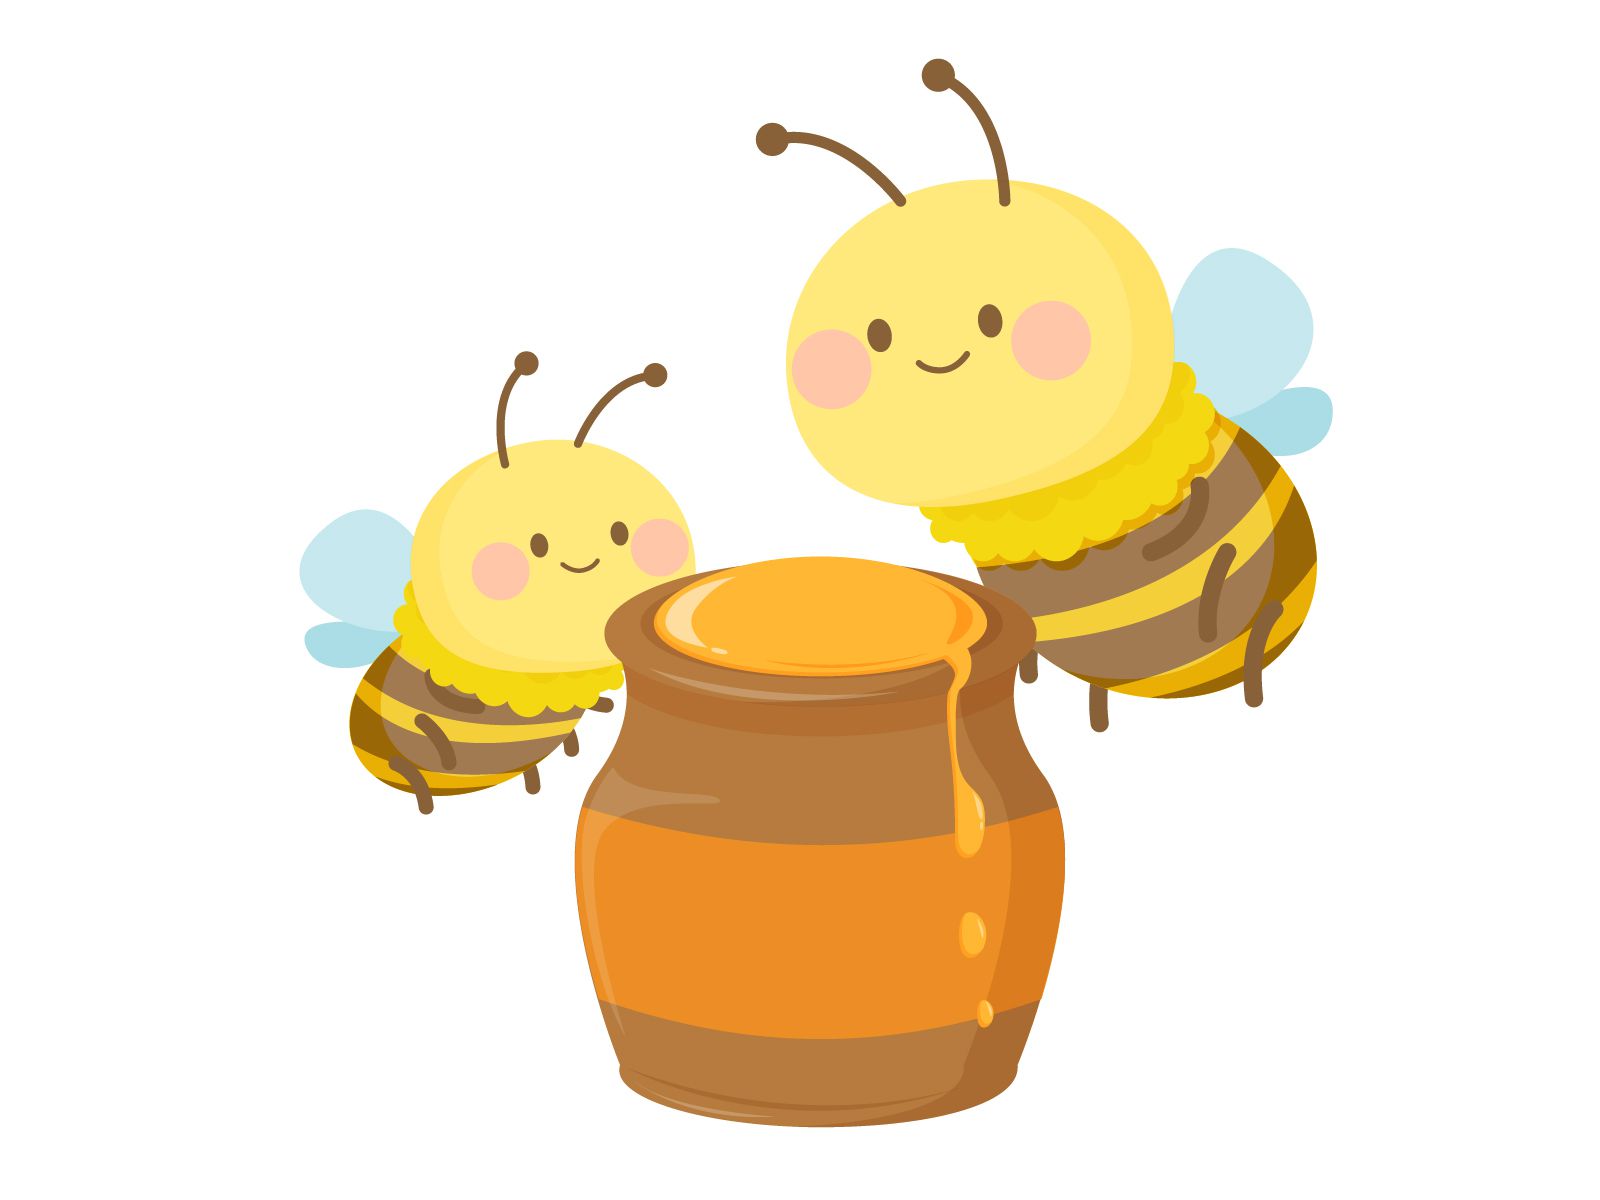 マヌカハニーを普通の蜂蜜と比較した場合の違い